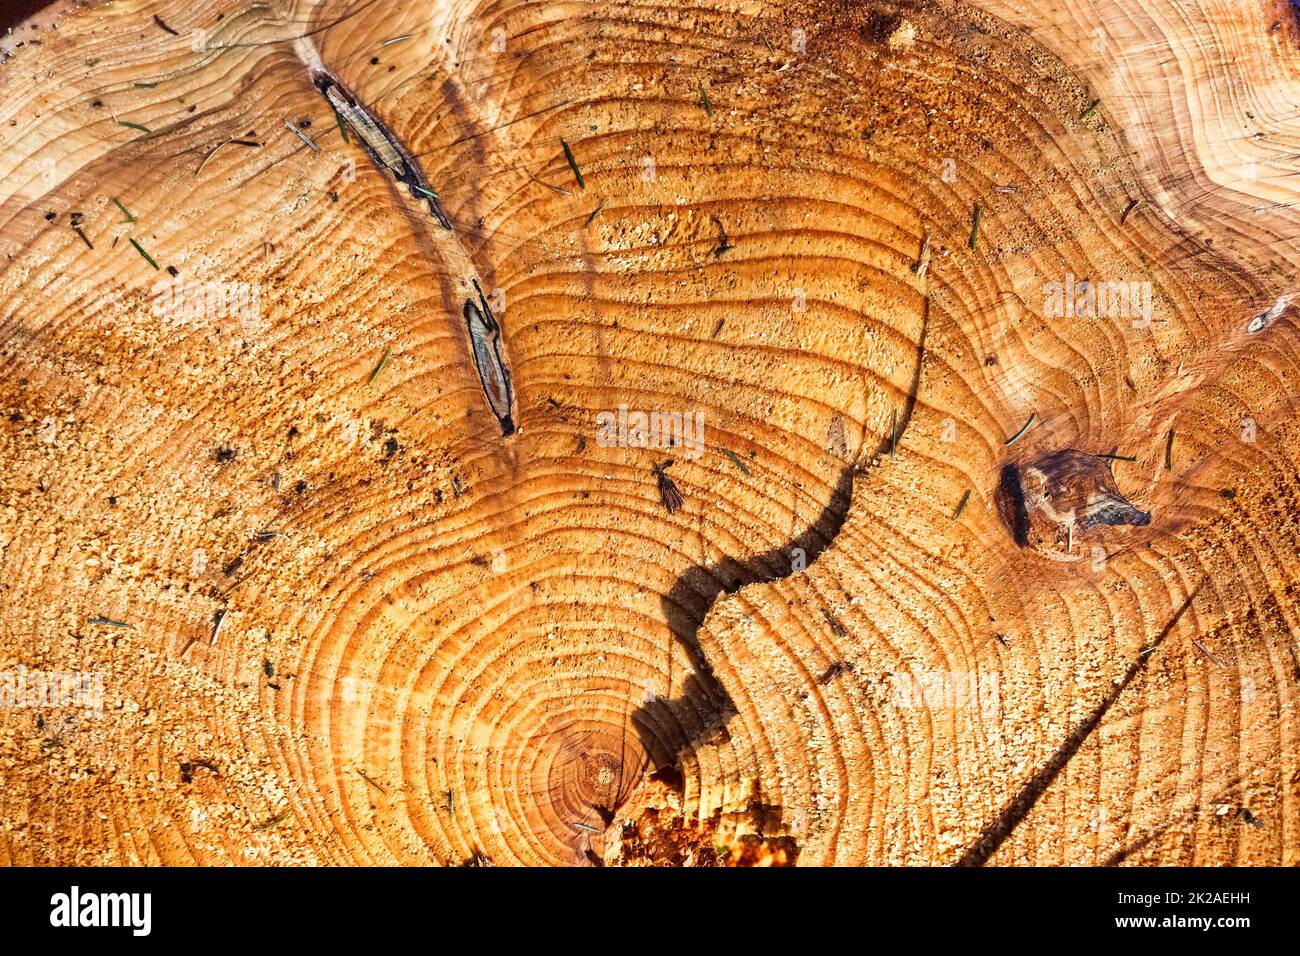 Bois scié frais dans une vue rapprochée. Texture détaillée des anneaux annuels sur une surface en bois. Banque D'Images